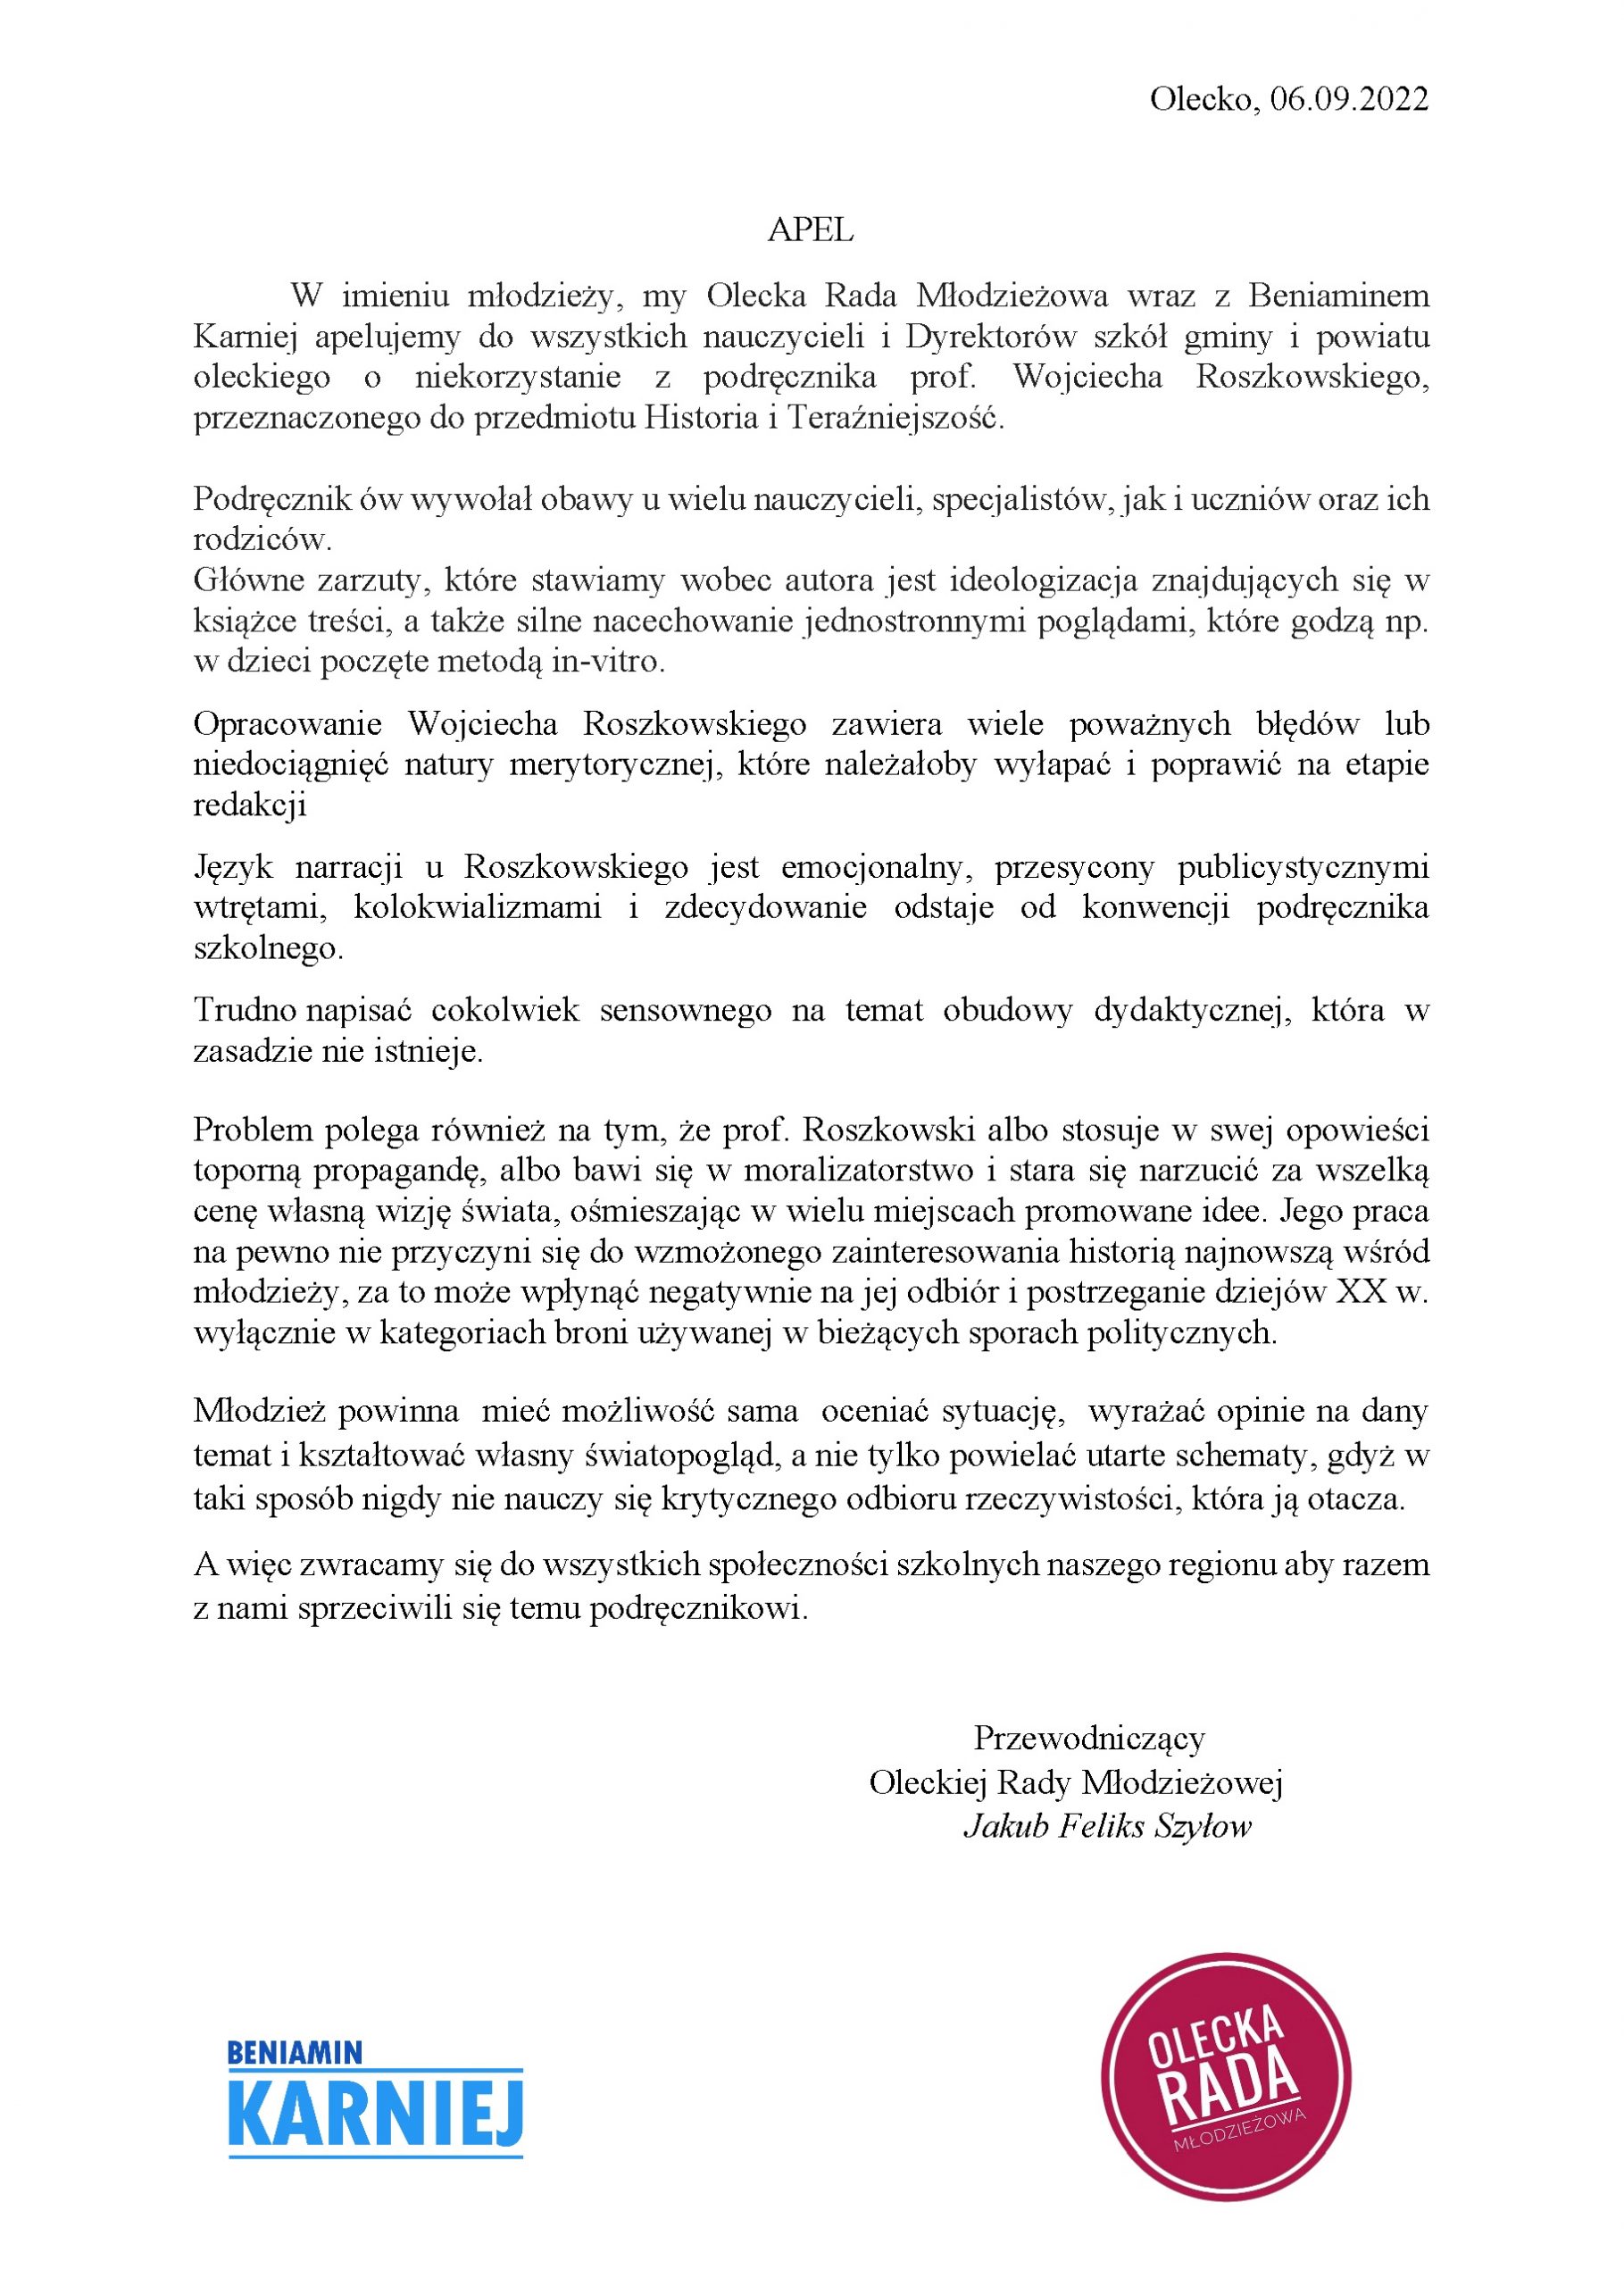 apel Oleckiej Rady Mlodziezowej w sprawie HiT scaled